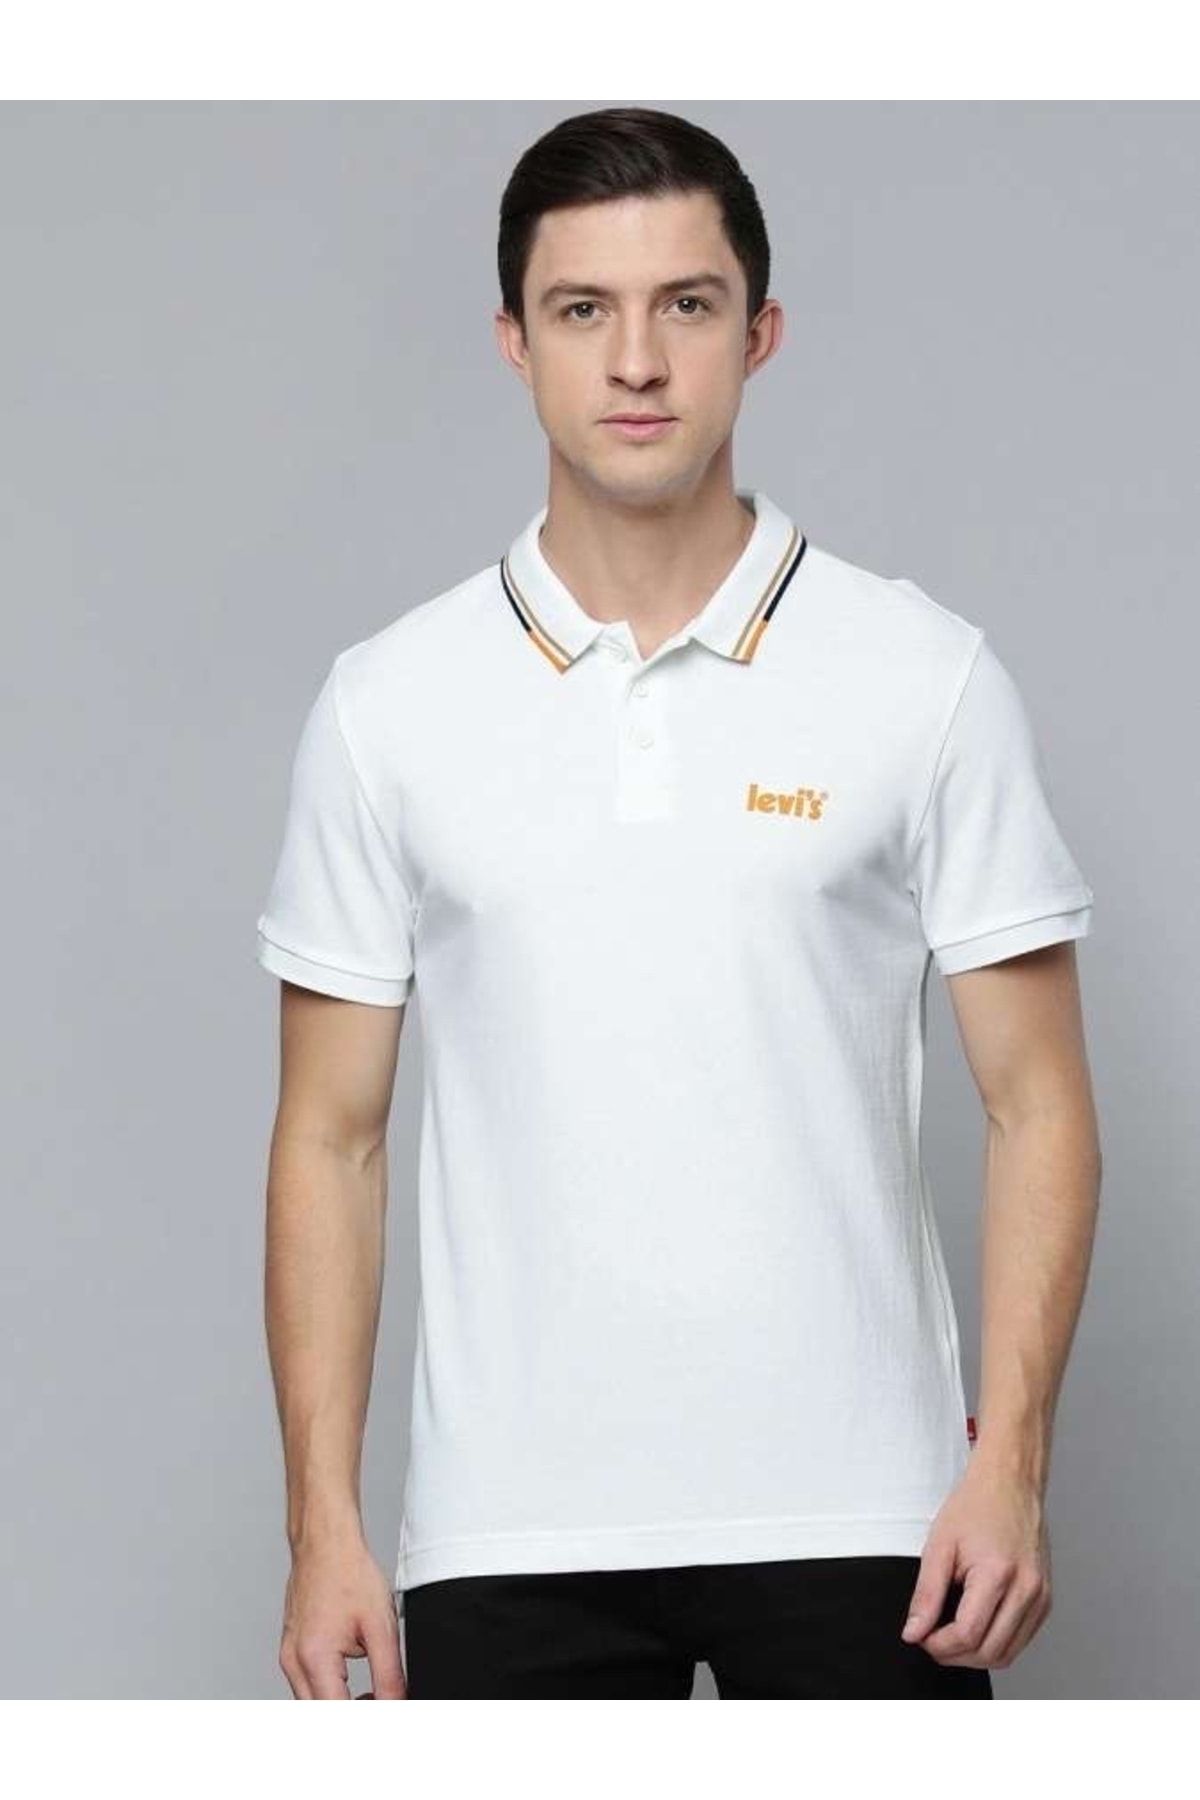 Levi's Mens Polo T-shirt